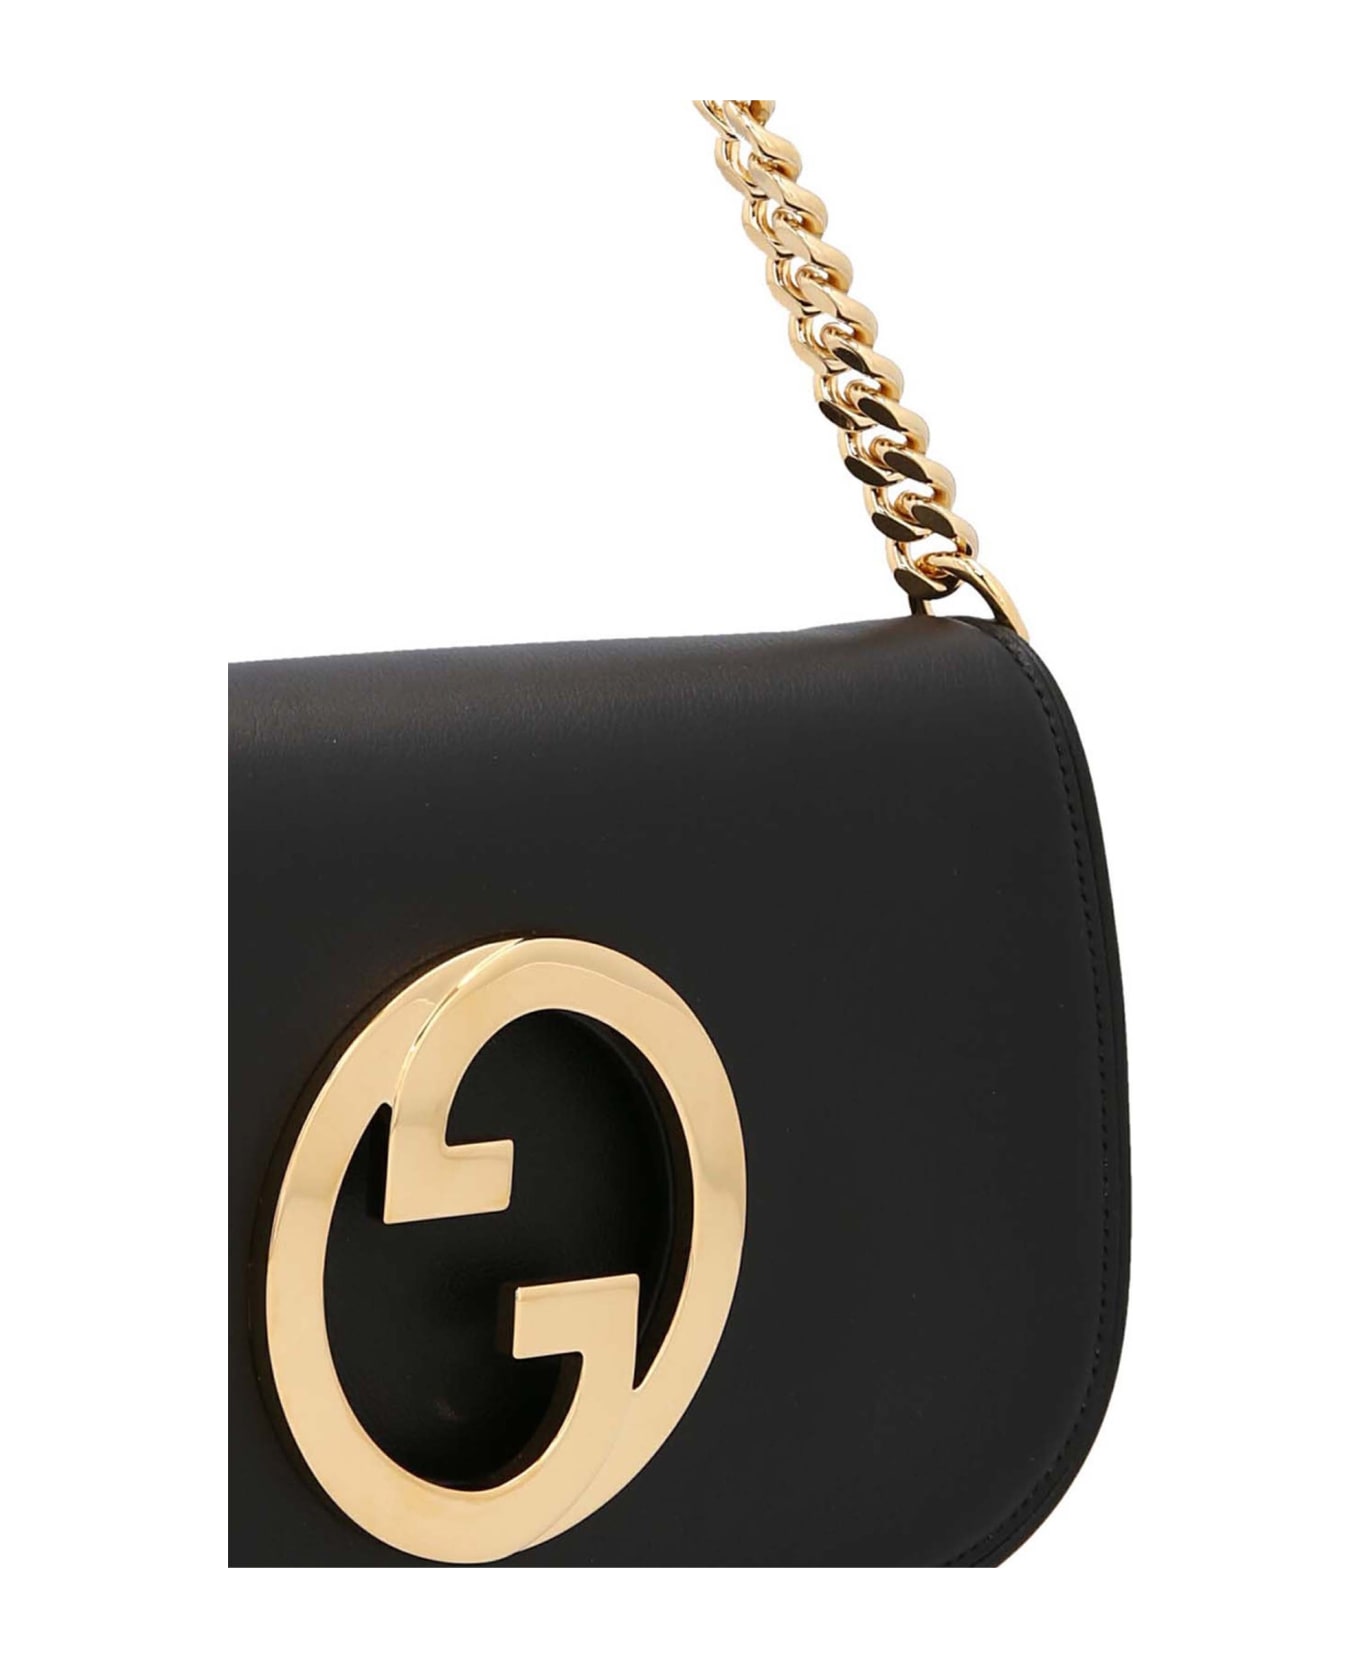 Gucci ' Blondie' Shoulder Bag - Nero トートバッグ